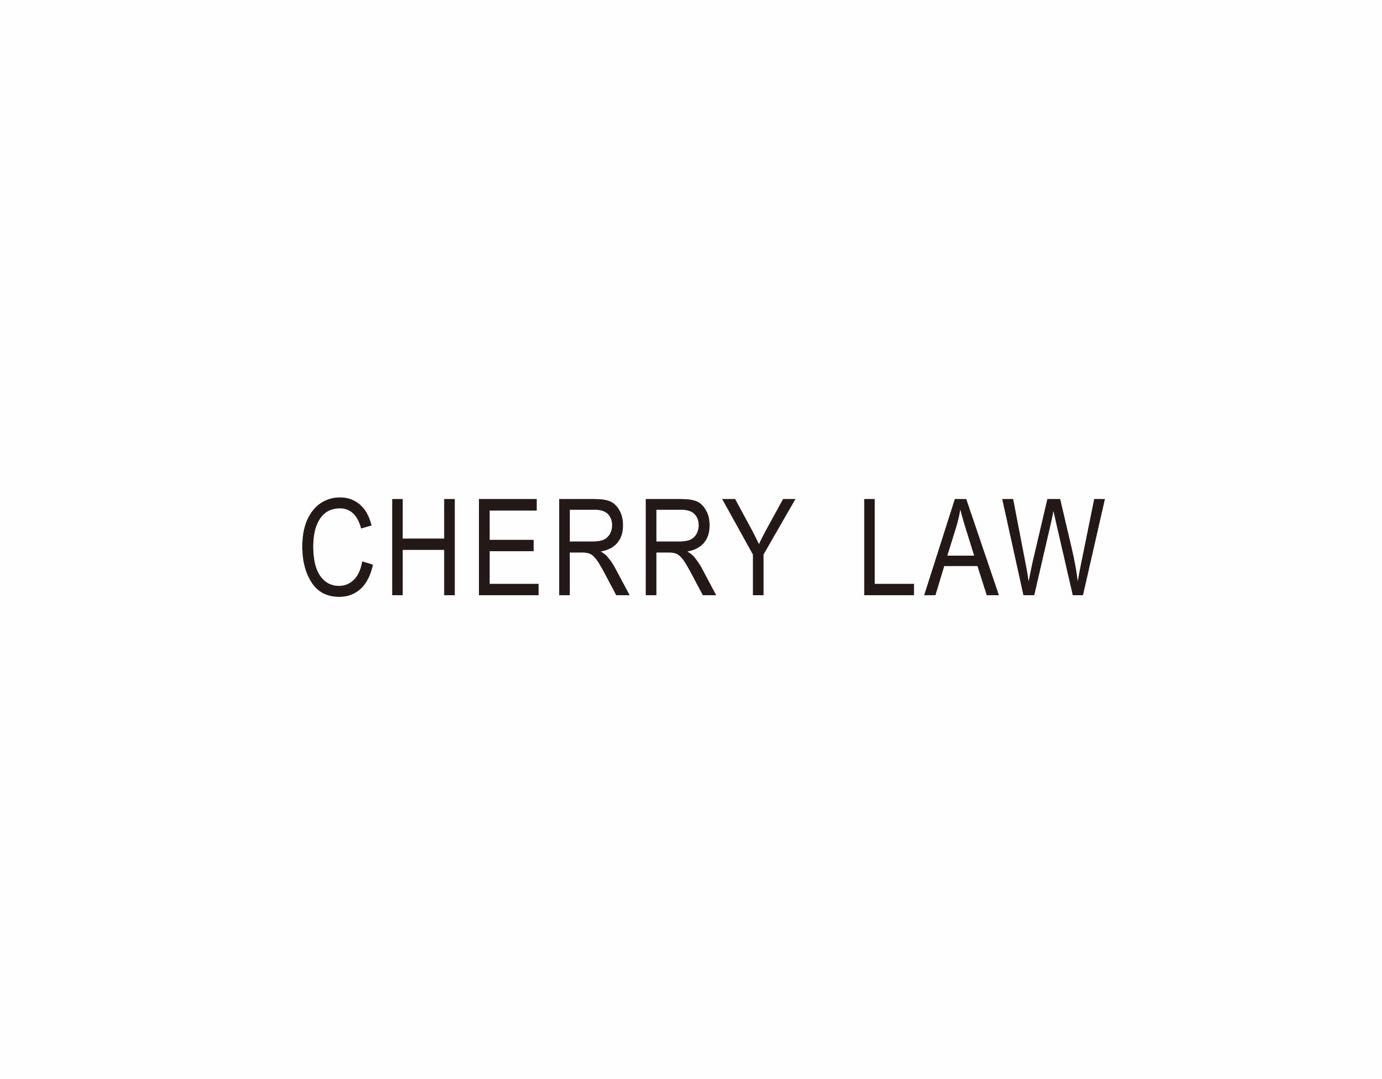 CHERRY LAW